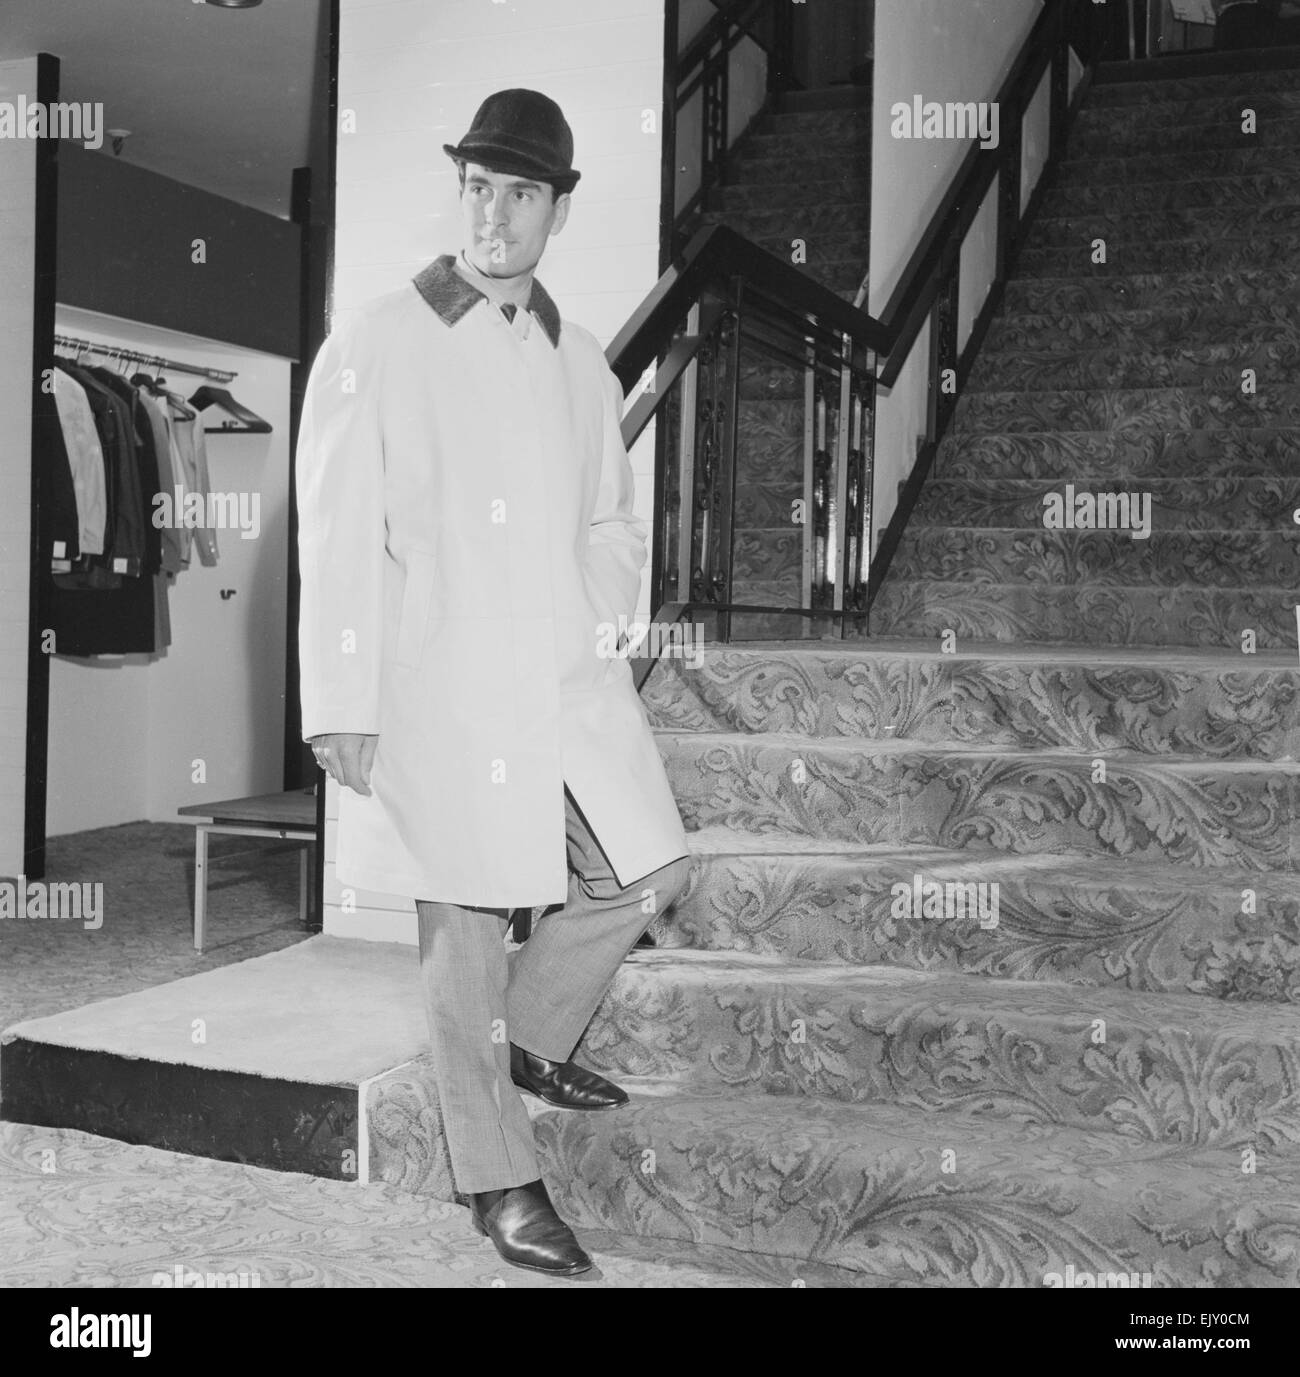 Le réveil la mode masculine de l'avenir tirer. Homme portant un manteau et un chapeau dans les escaliers . Vers 1960 Banque D'Images